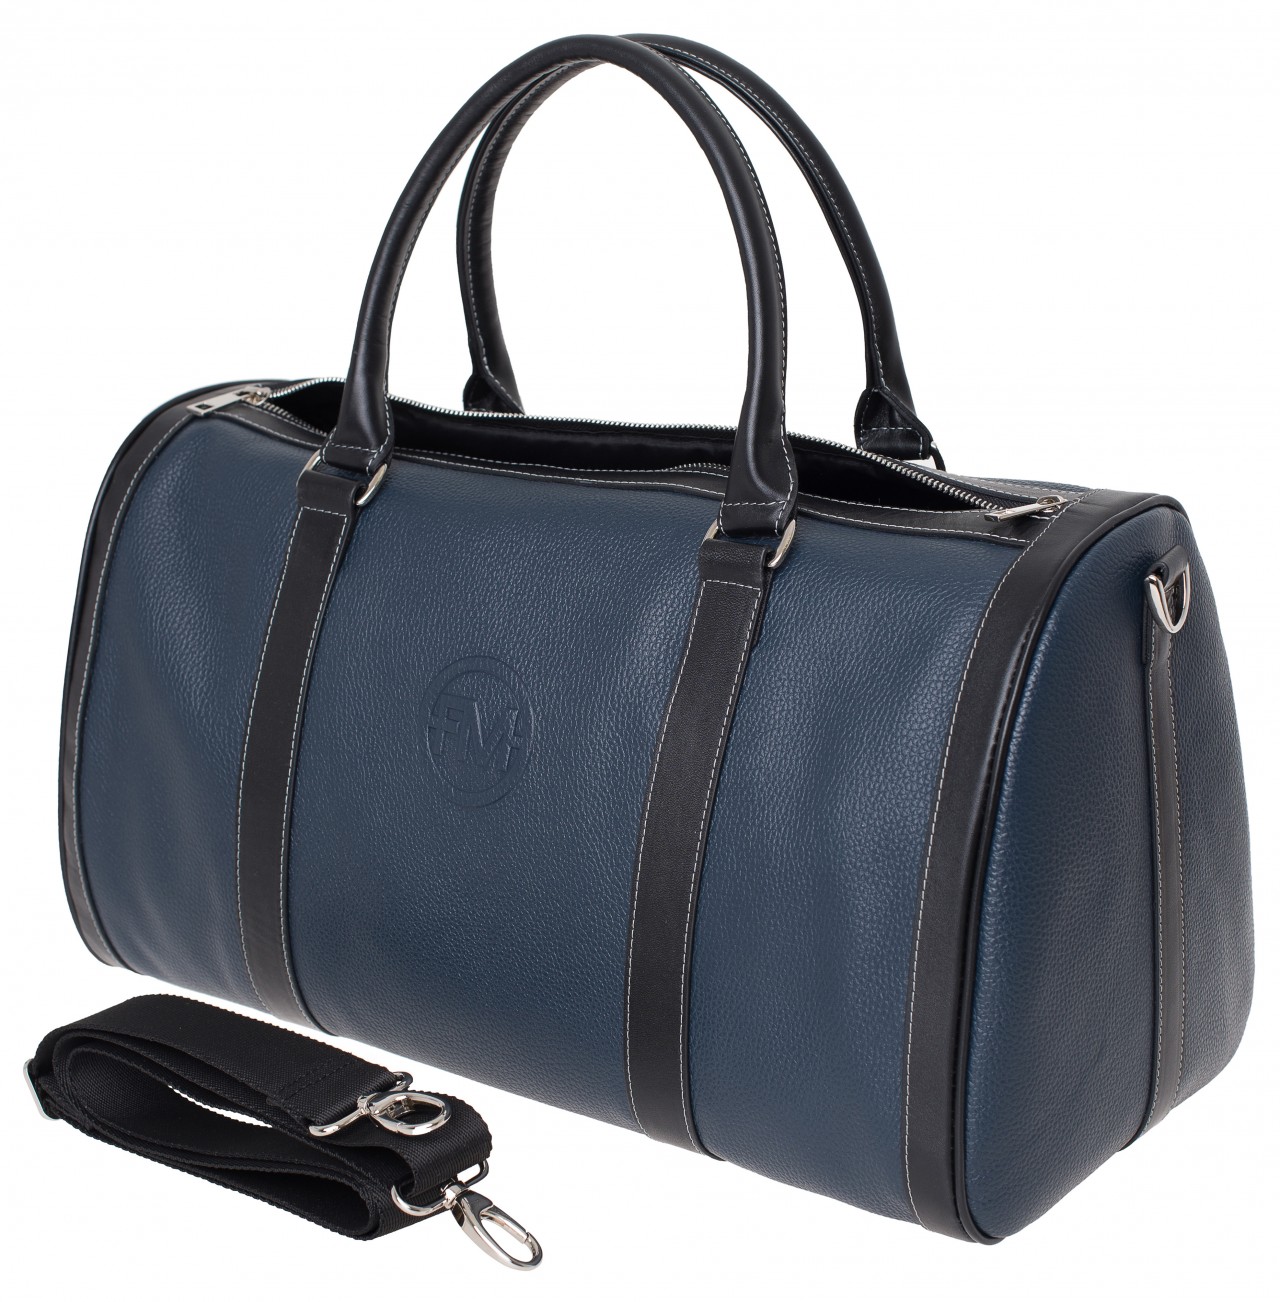 Дорожная сумка унисекс Franchesco Mariscotti 6-425к синяя/черная, 47х26х23 см